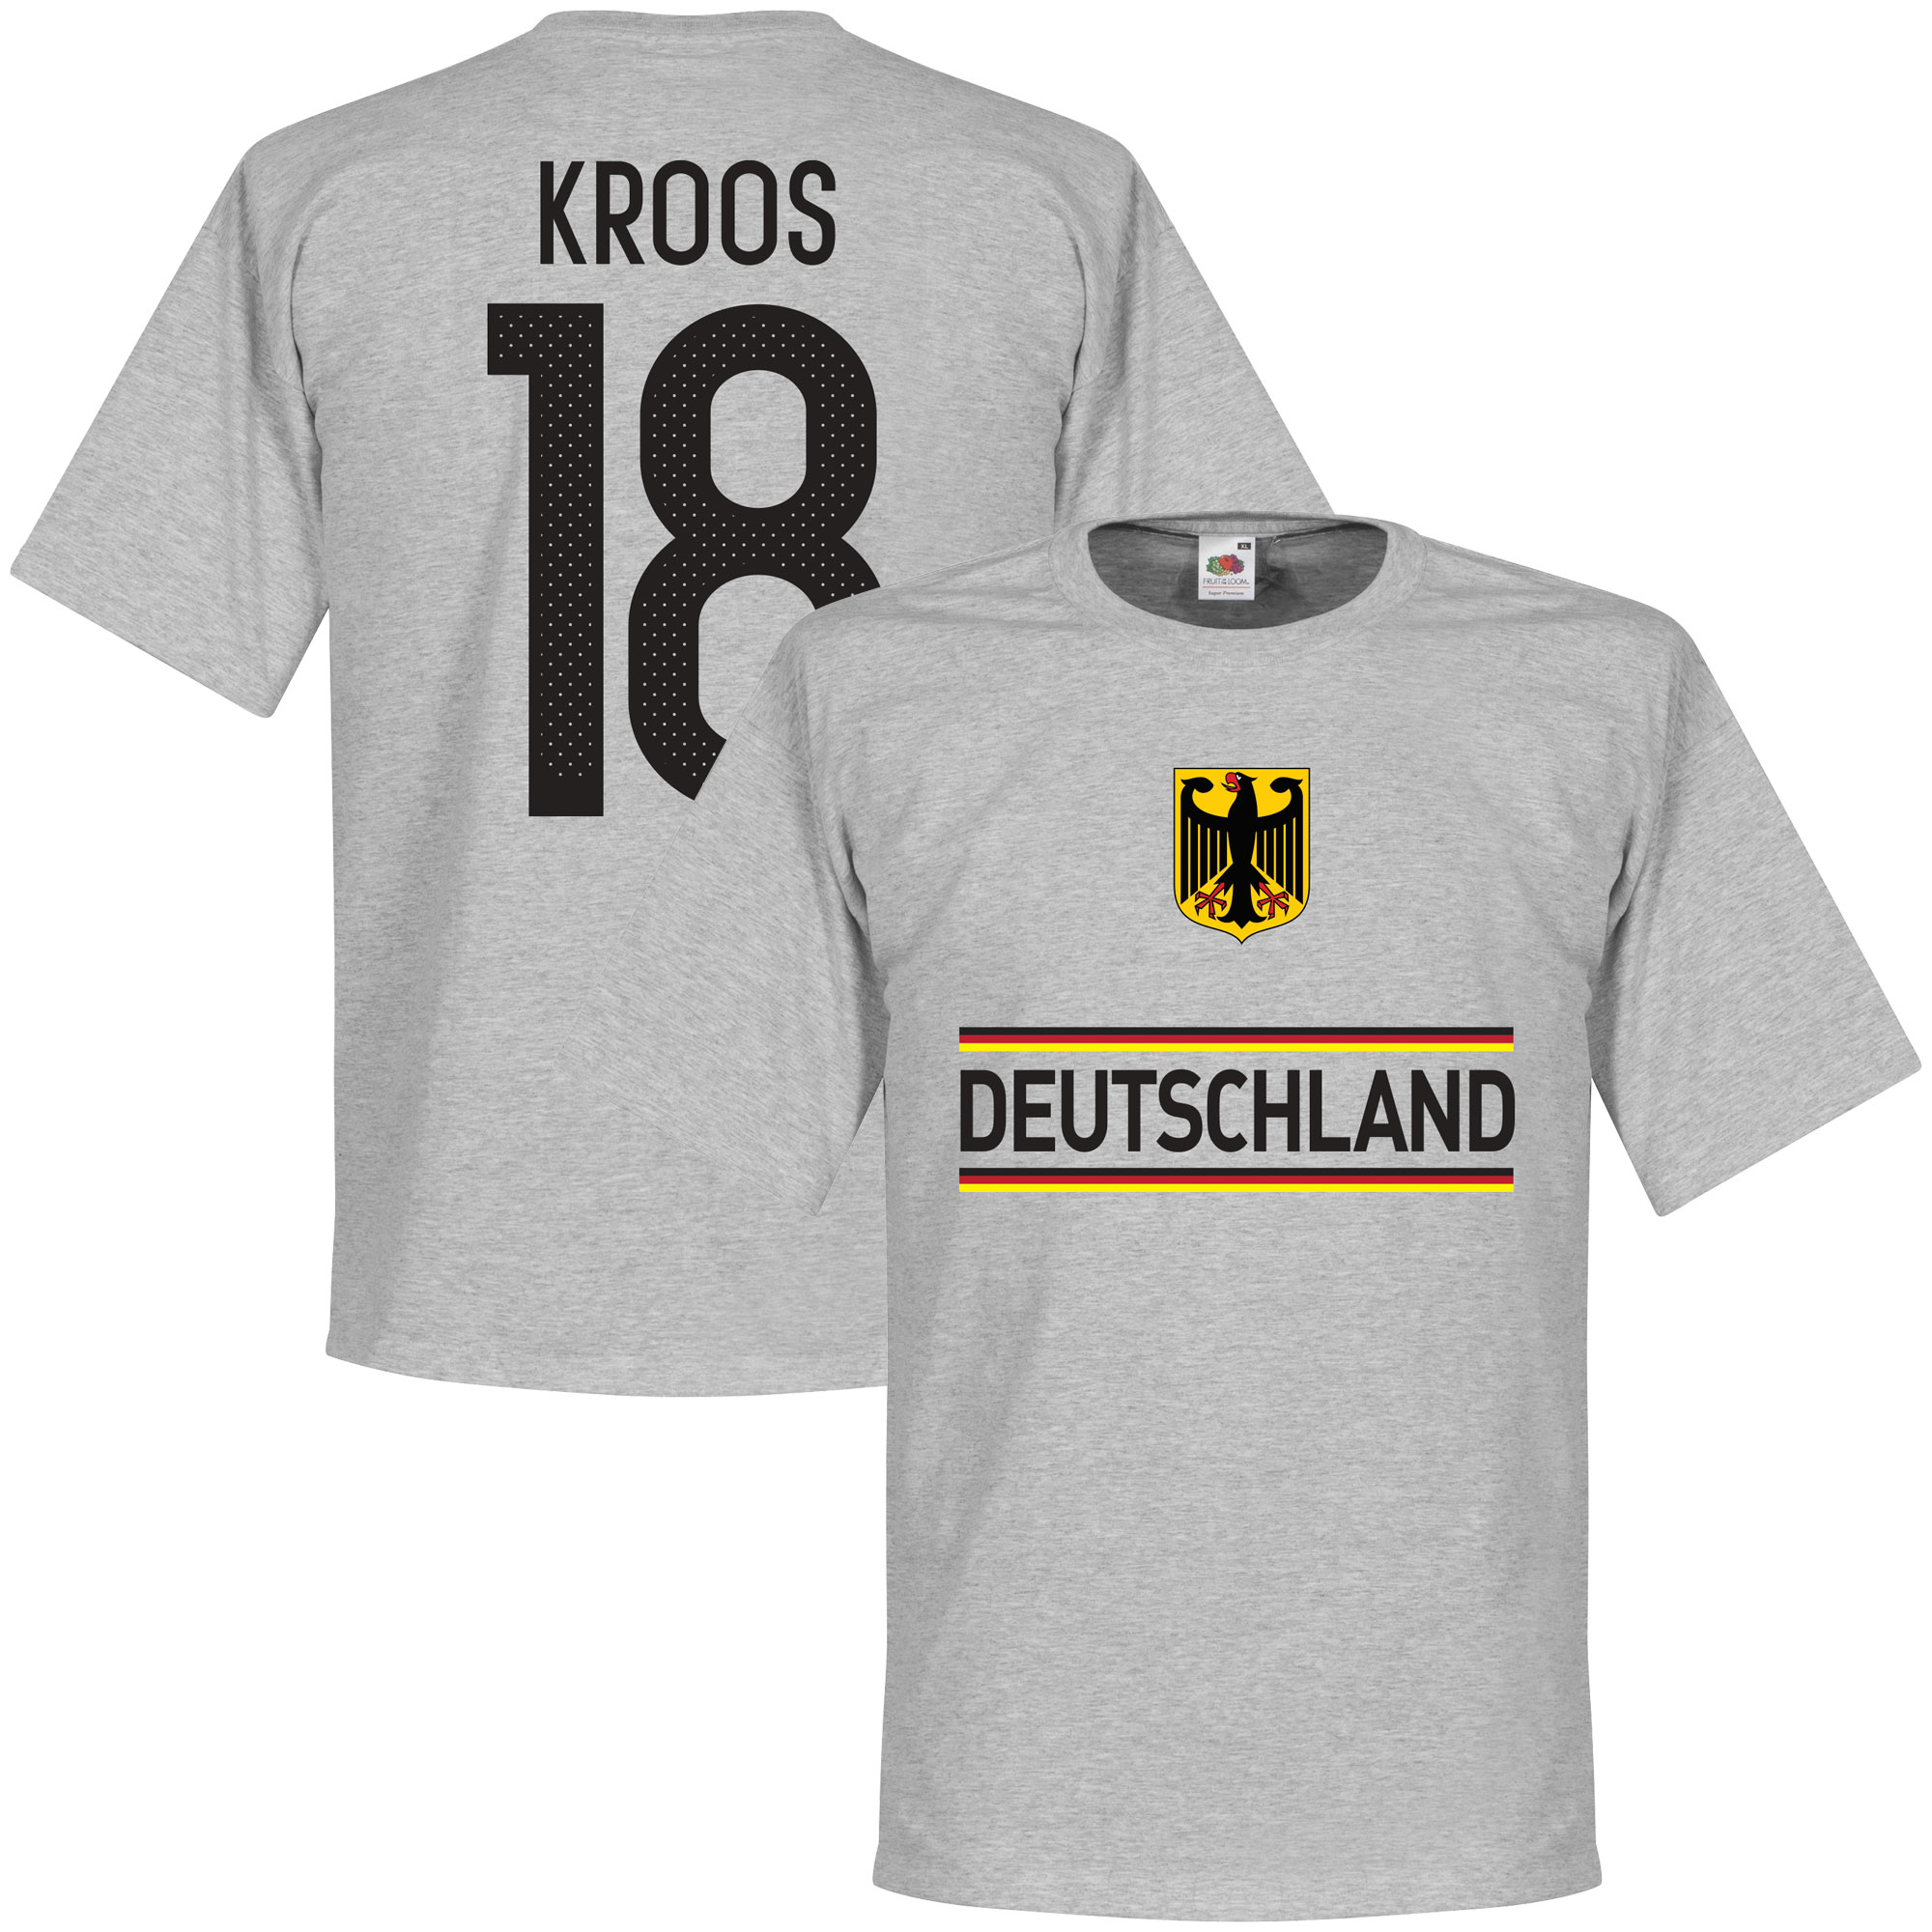 Duitsland Kroos Team T-Shirt XXXXL